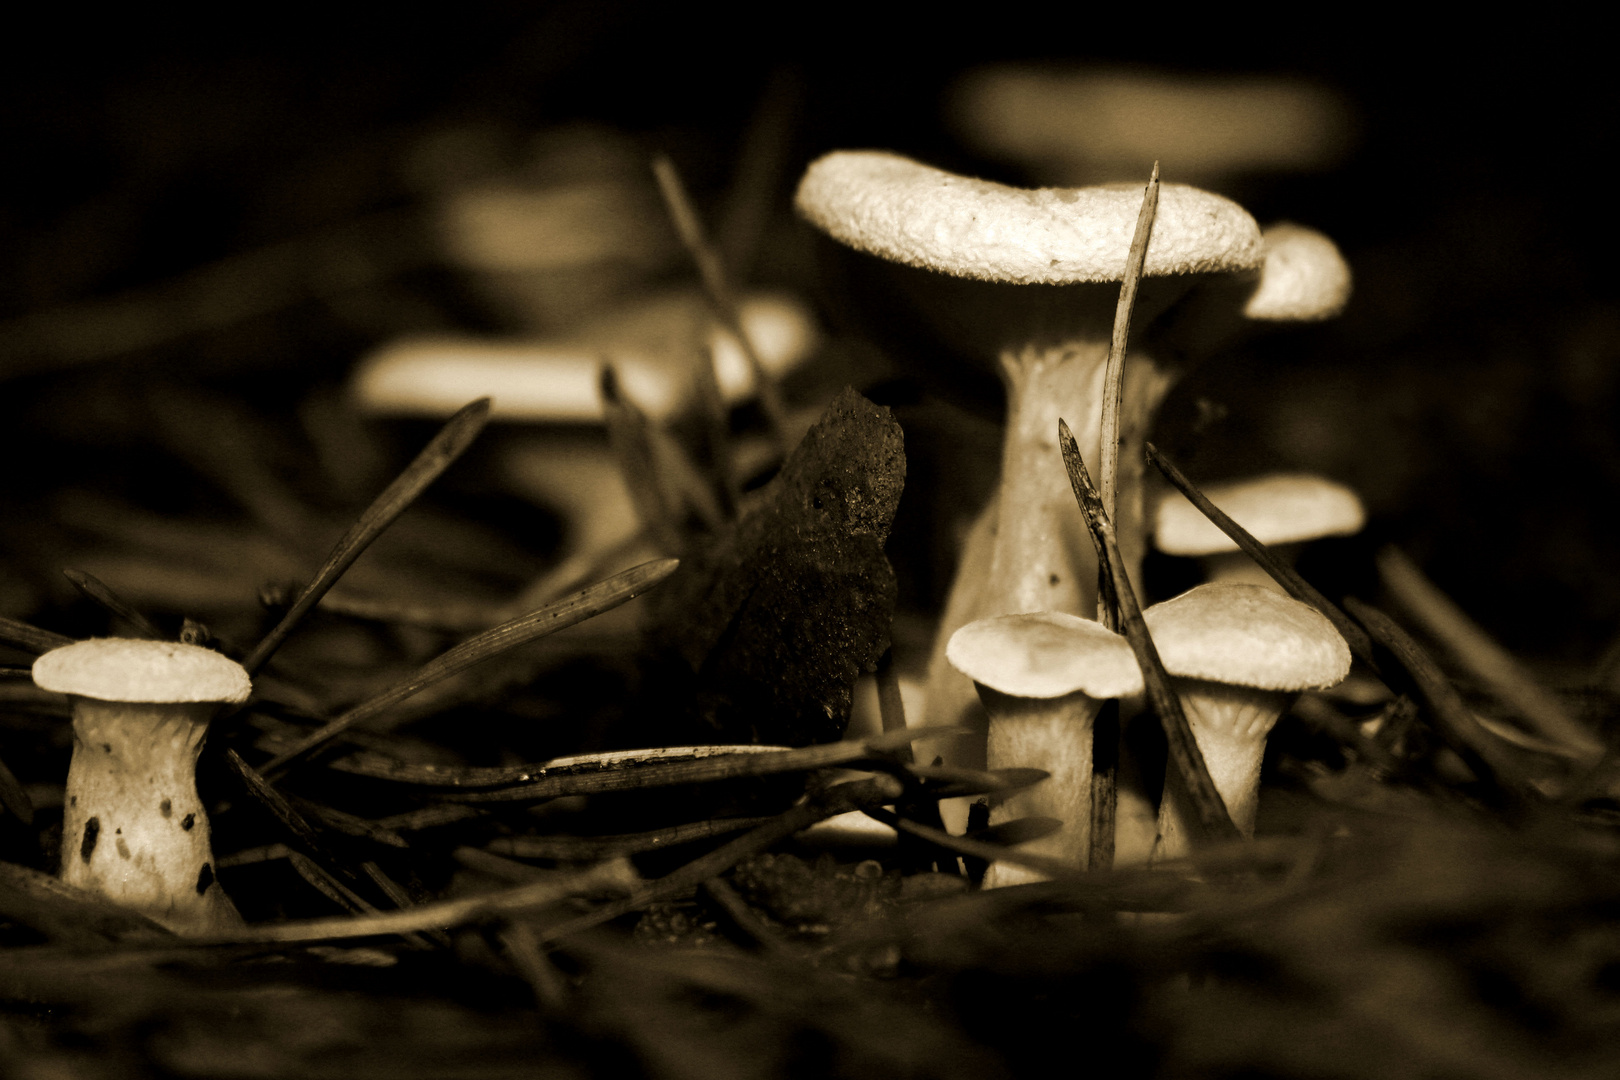 Eine kleine Pilzfamilie